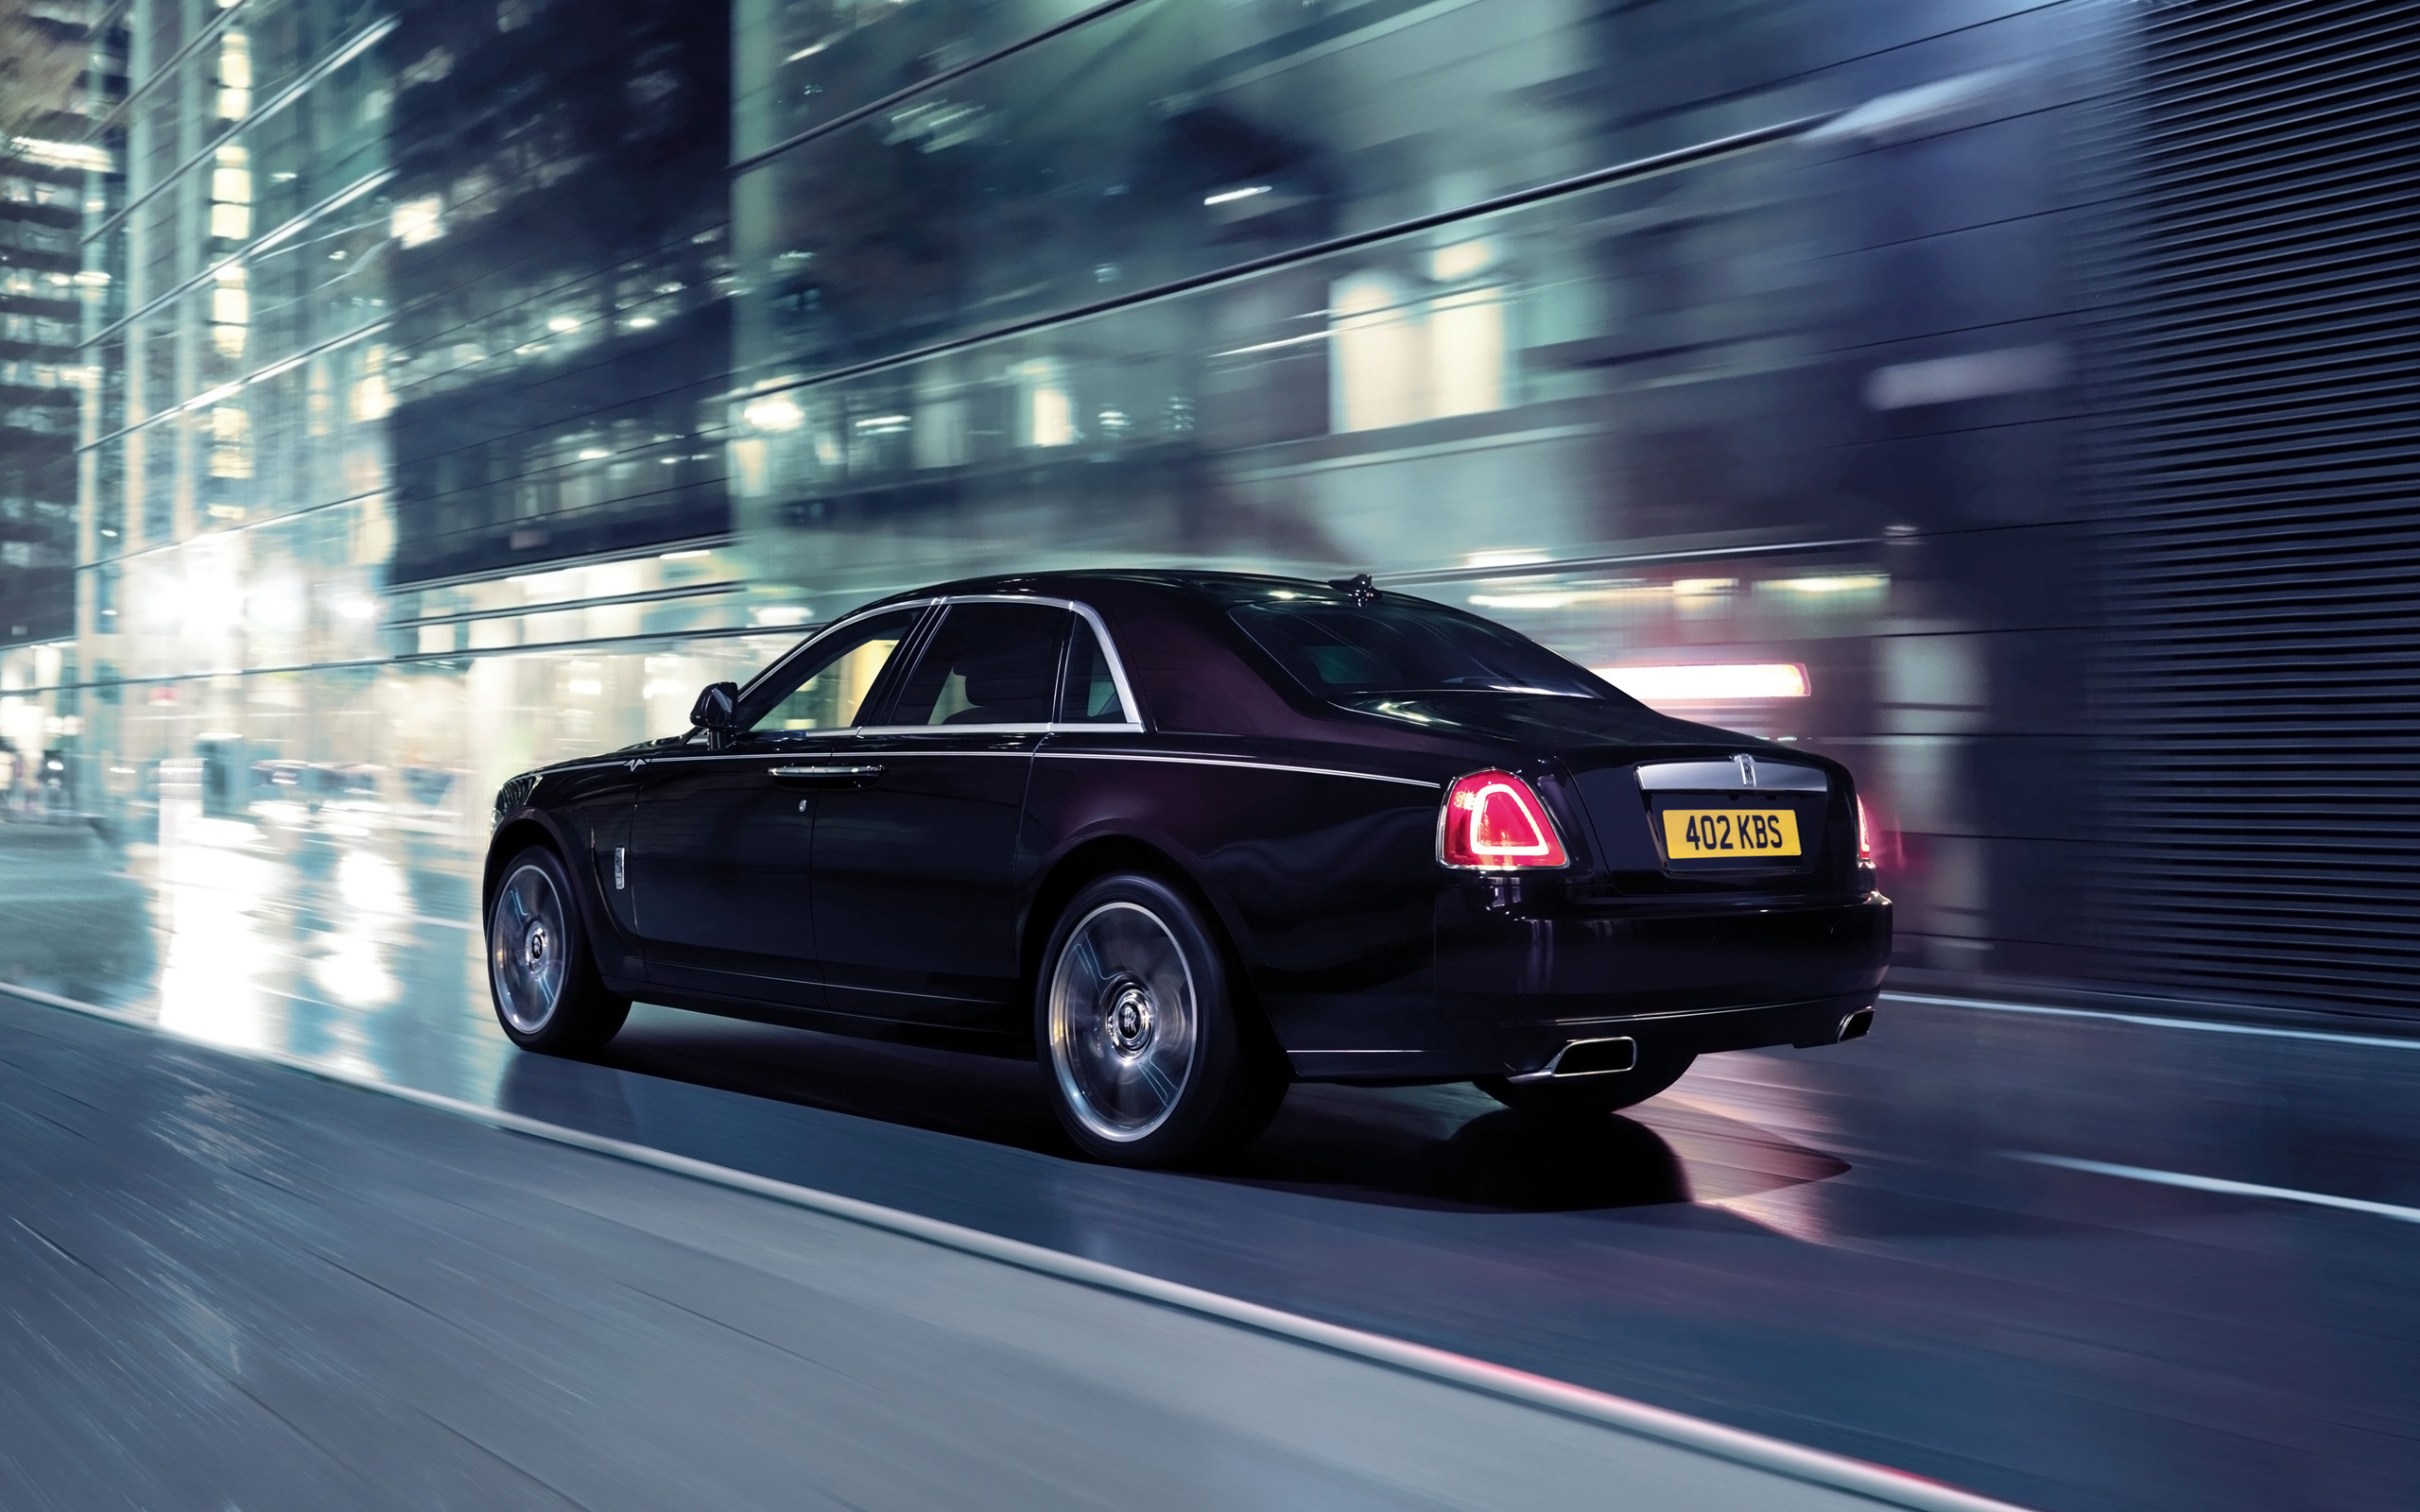  2015 Rolls-Royce Ghost V-Specification Wallpaper.